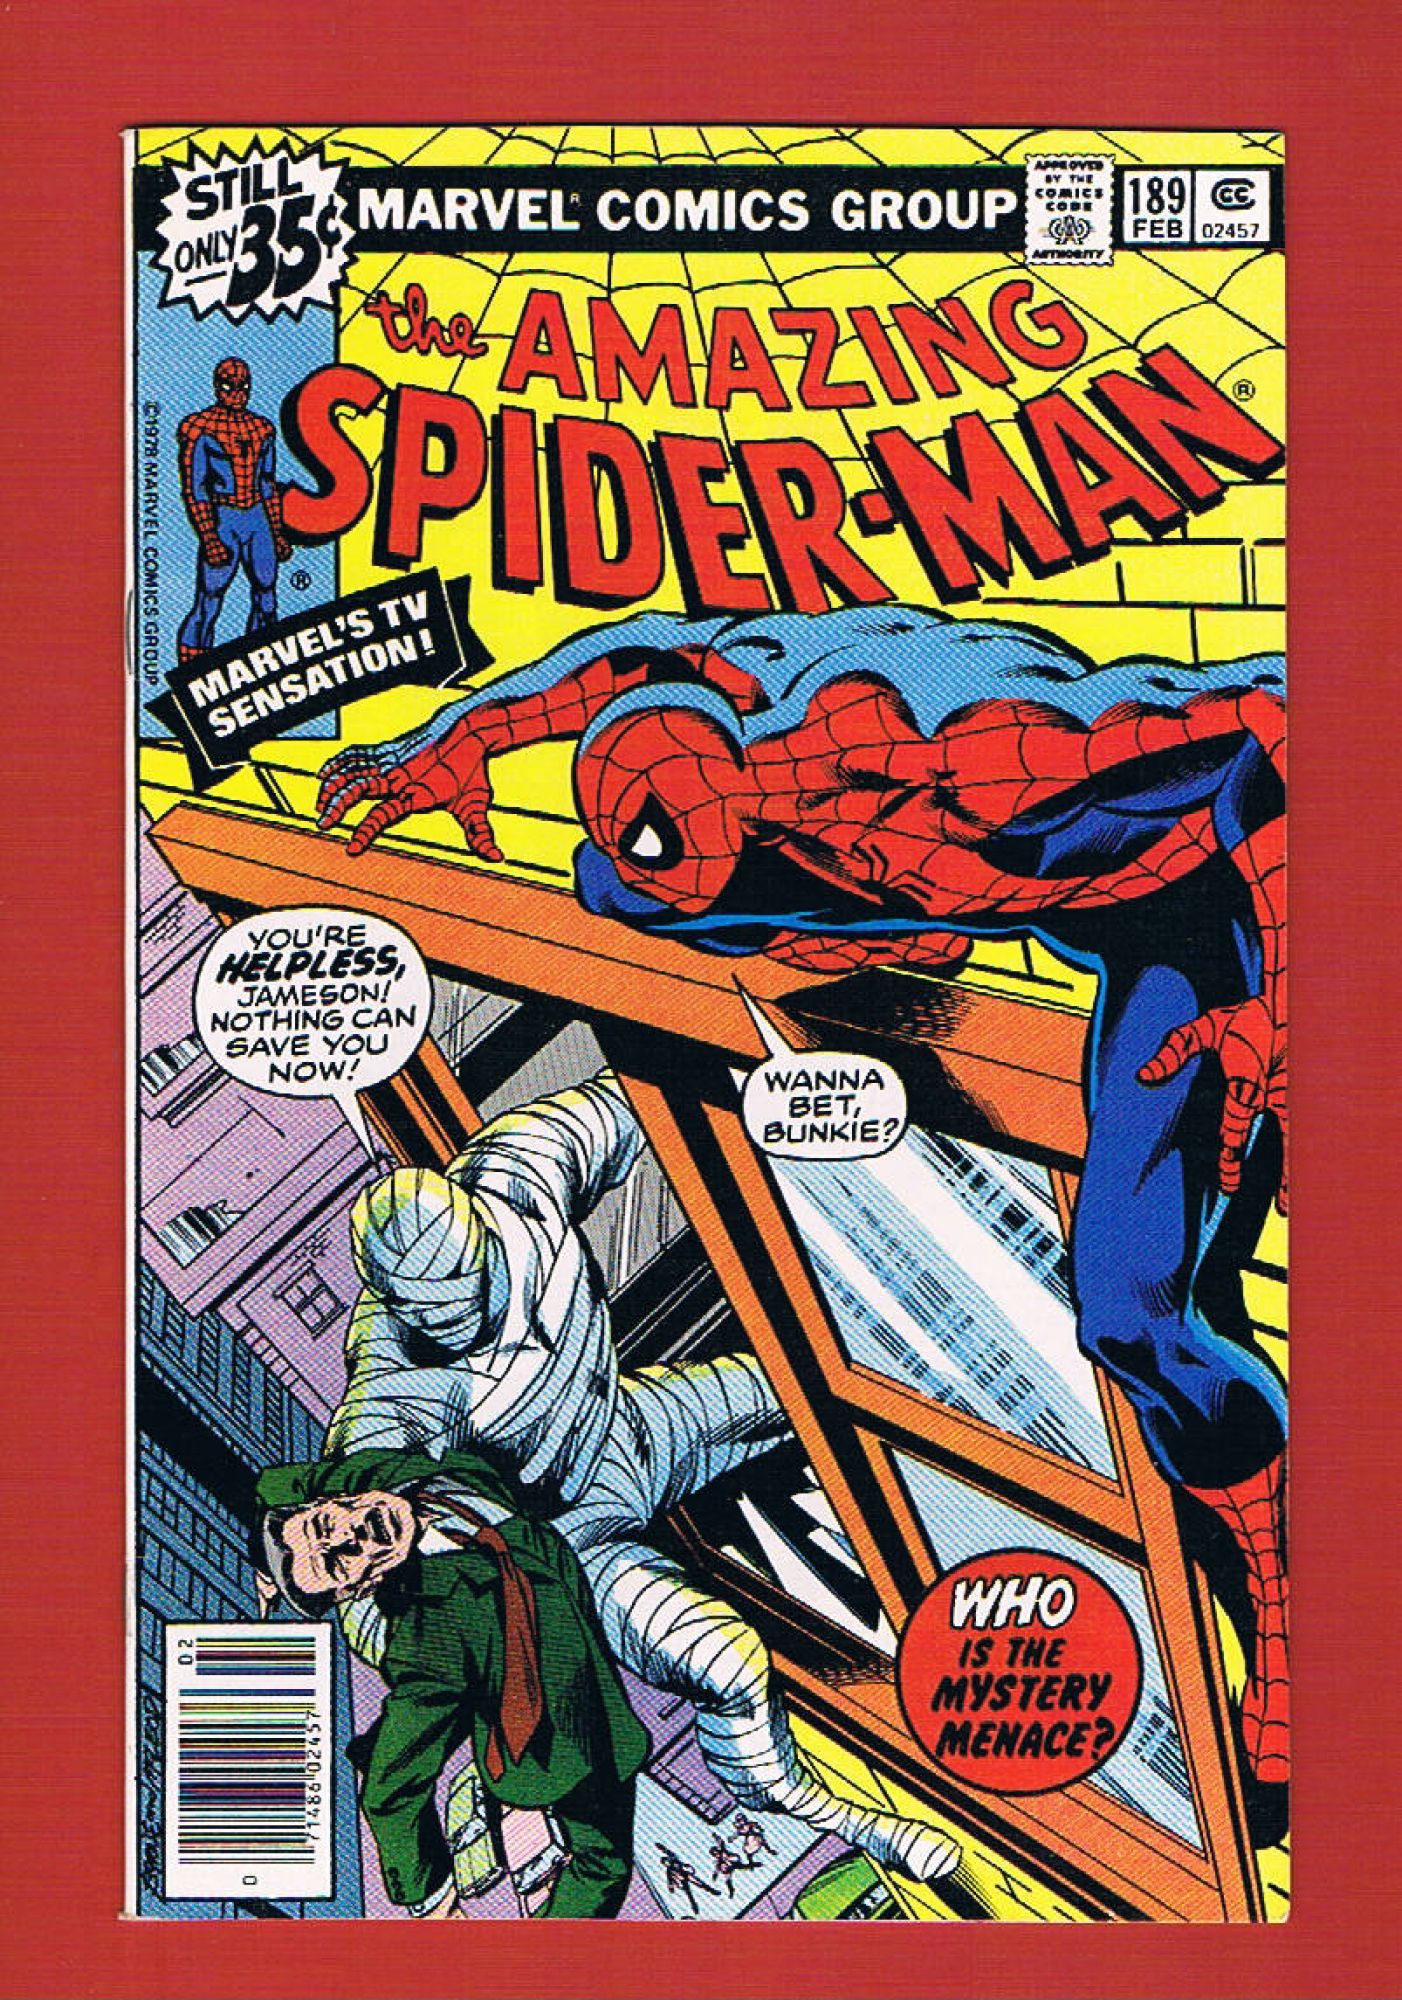 Amazing Spider-Man #189, Feb 1979, 7.0 FN/VF